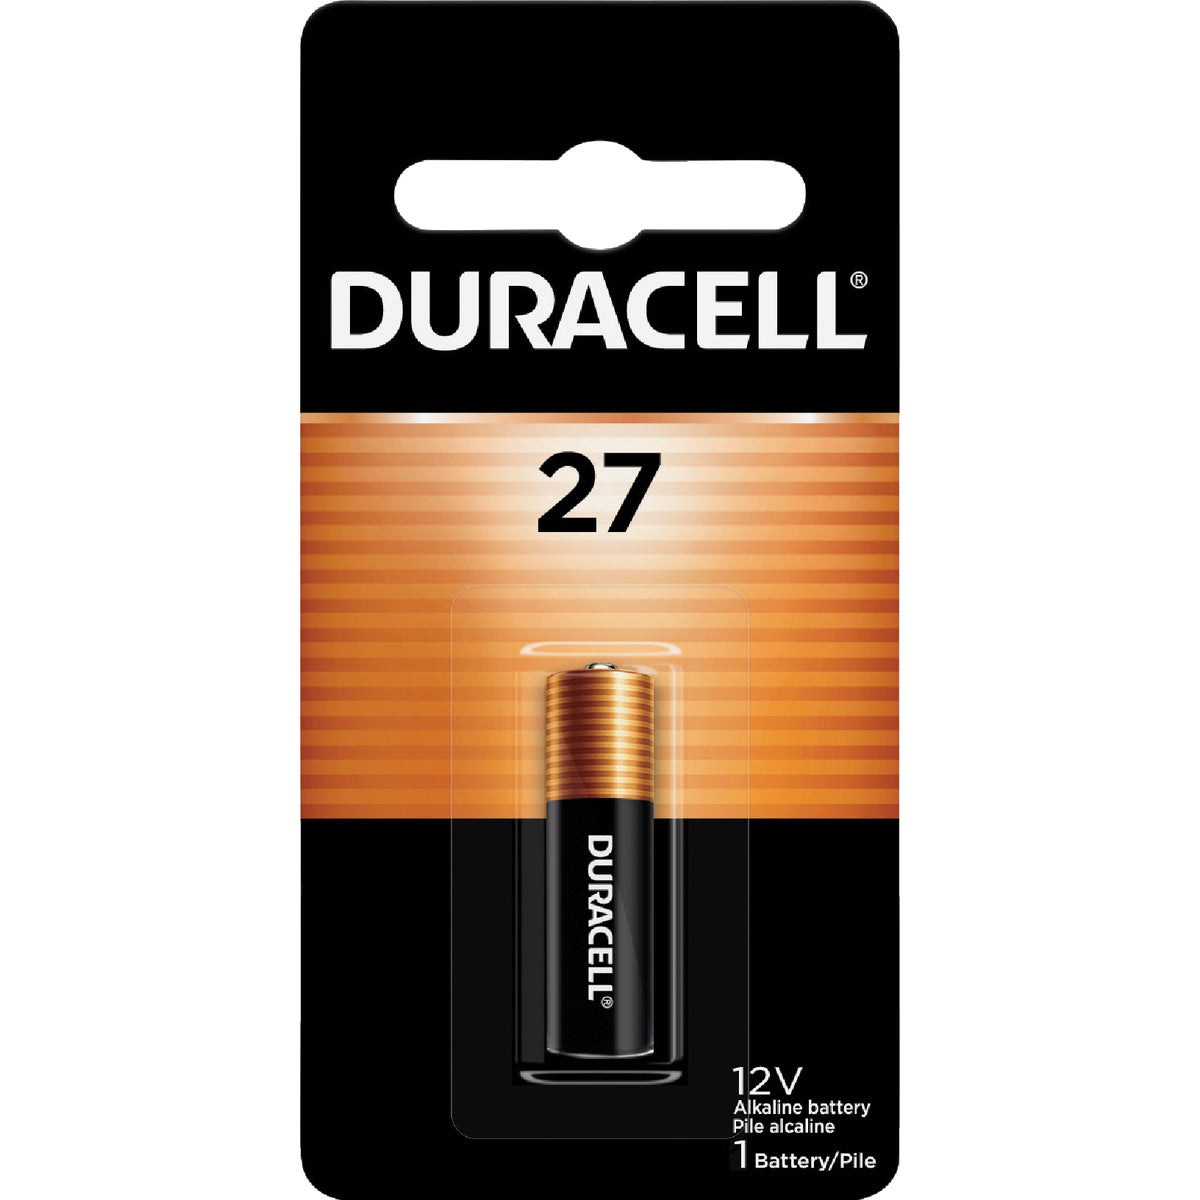 Duracell 27 Alkaline Battery